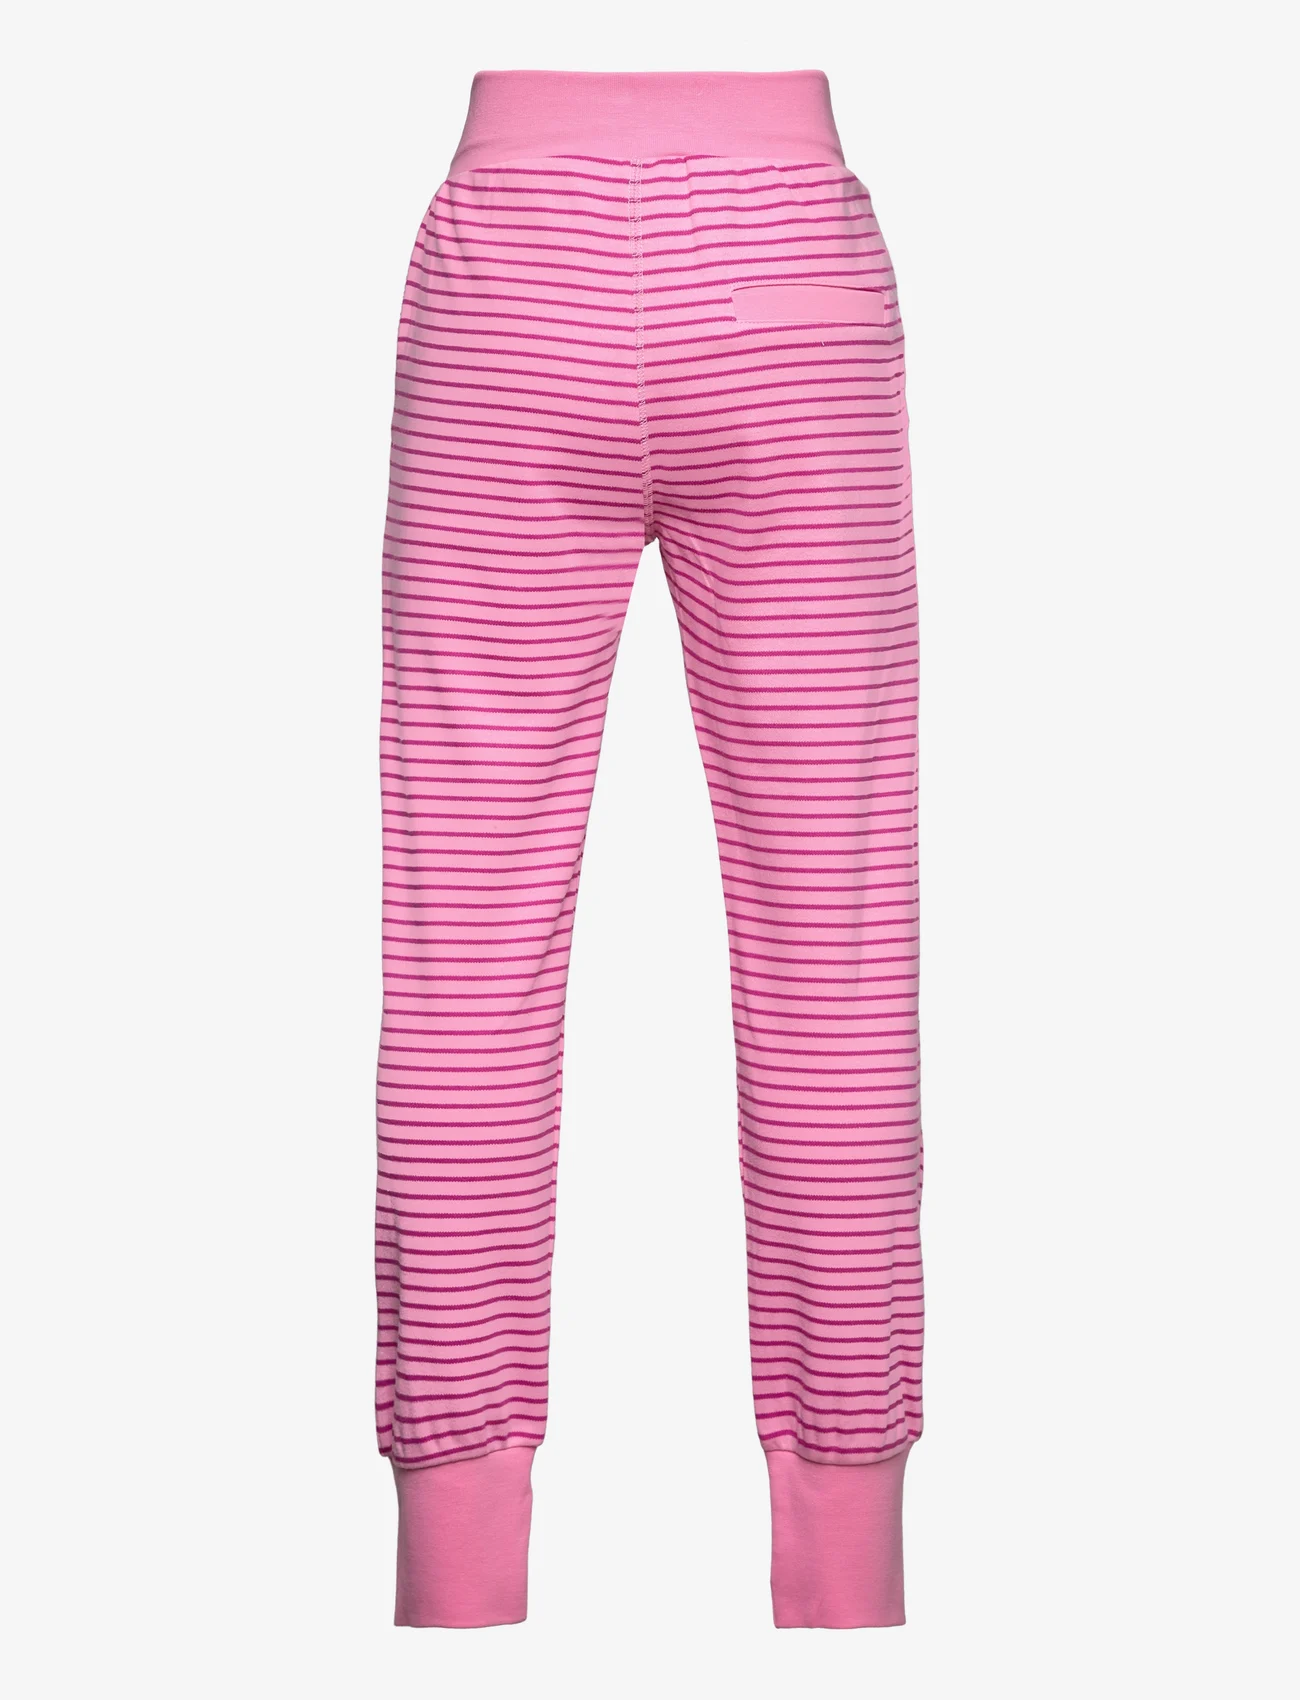 Geggamoja - Long pants - laveste priser - pink - 1